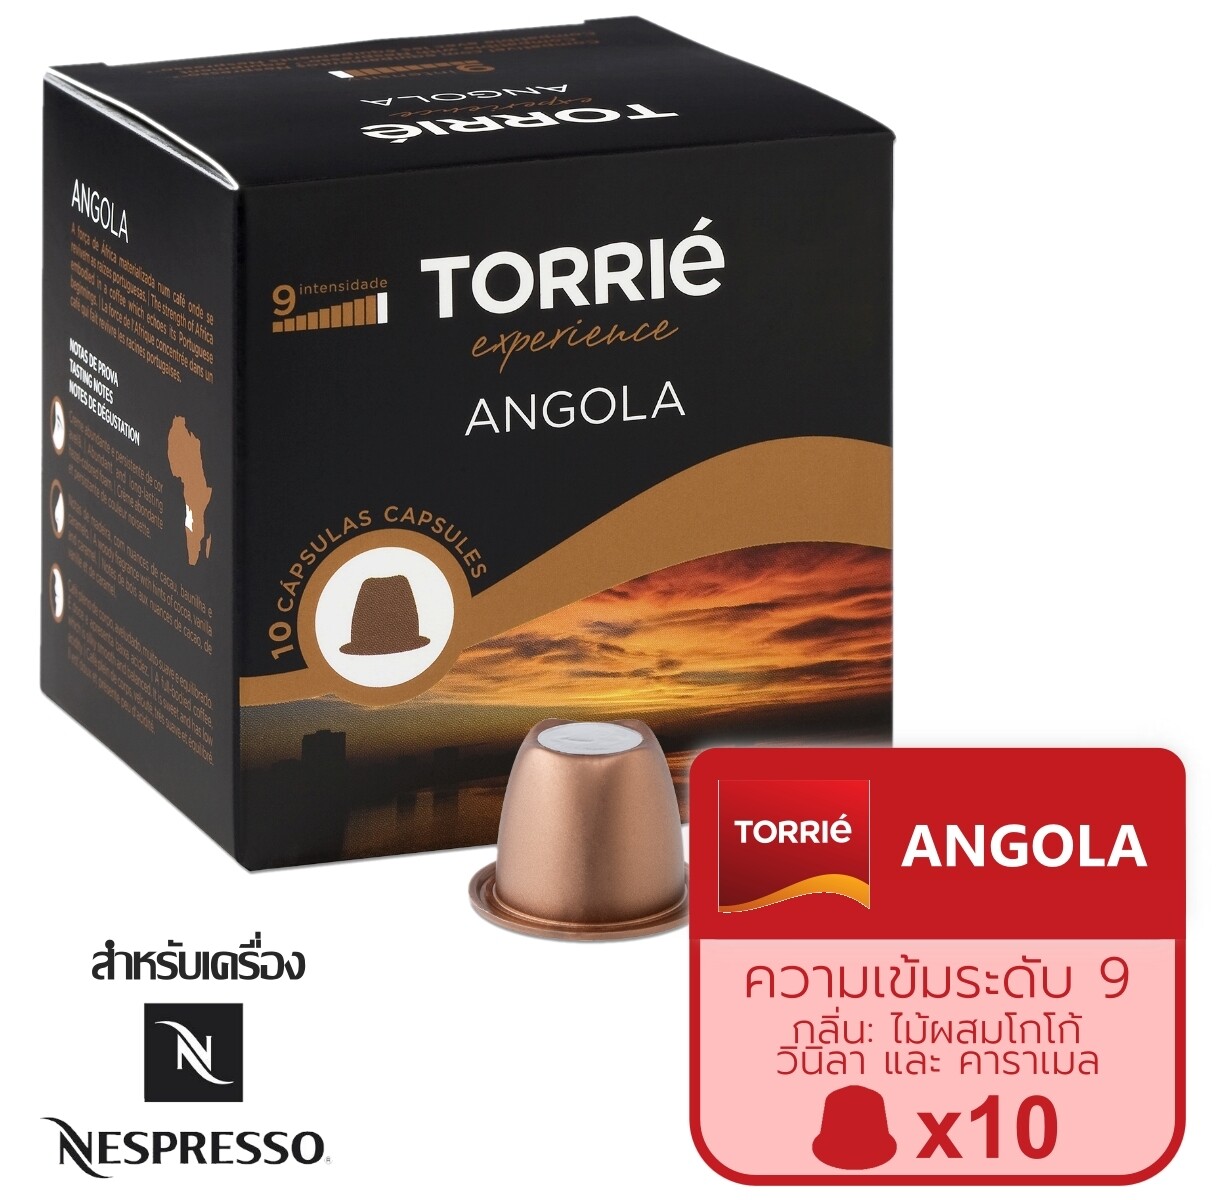 (นำเข้าจากโปรตุเกส) Angola  Torrié Coffee Capsules Nespresso® Compatible กาแฟแคปซูล เนสเปรสโซ่ แคปซูลกาแฟ กาแฟแคปซูล nespresso